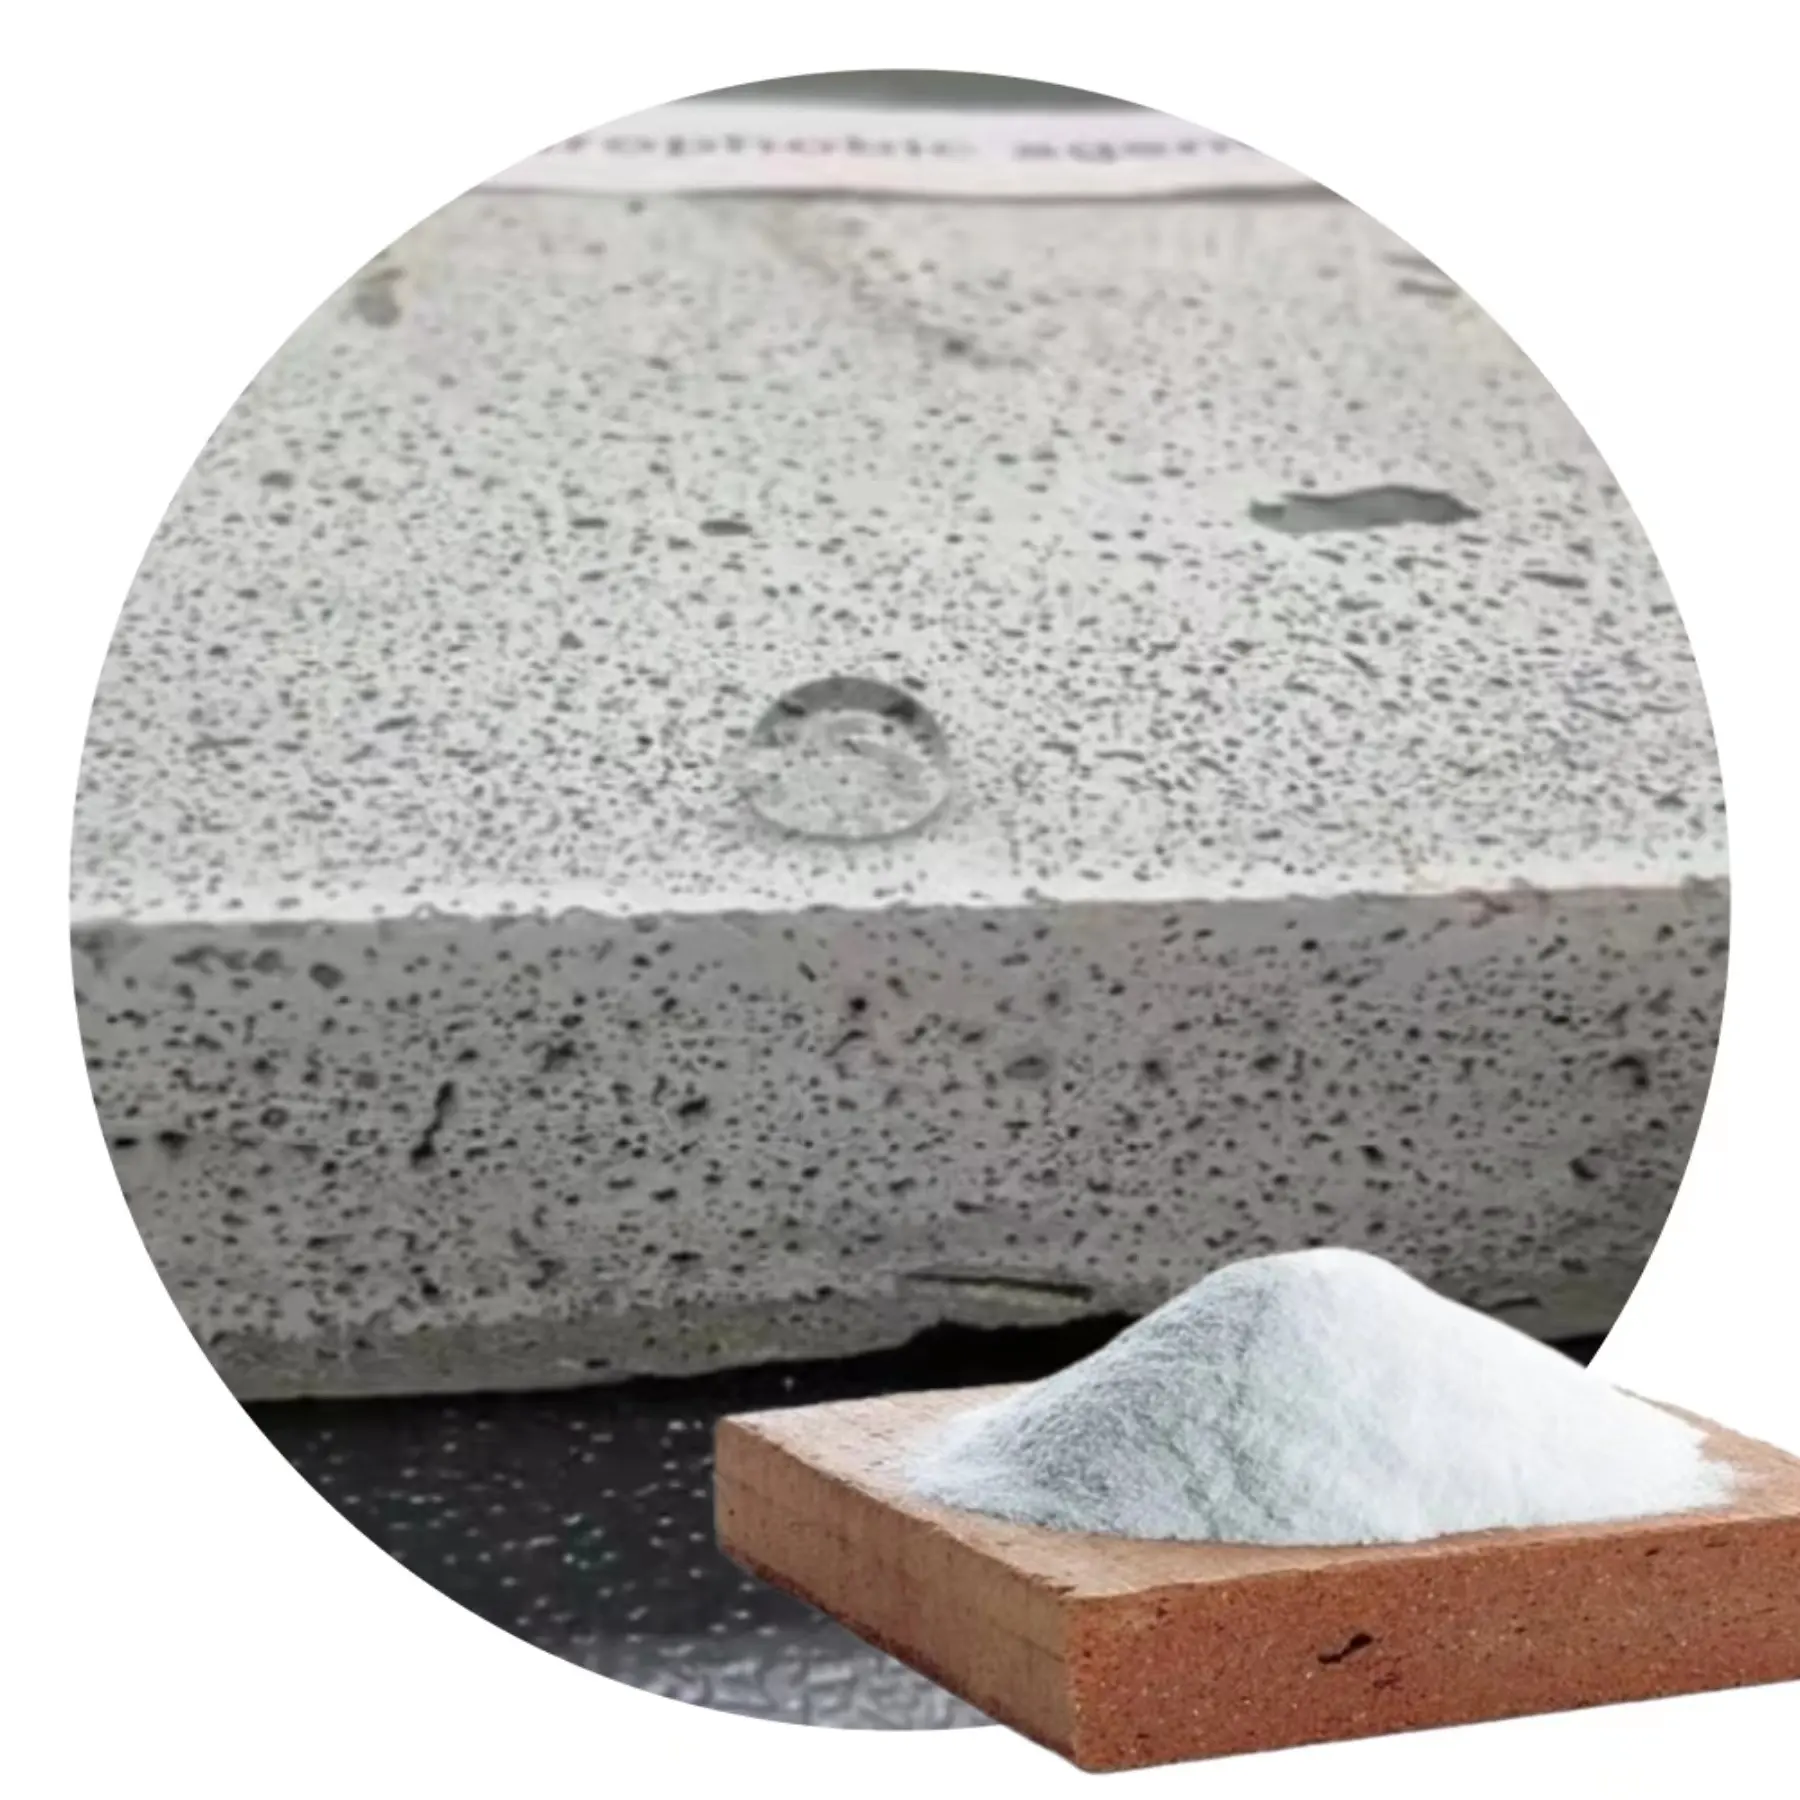 Çimento bazlı ürünlerin uzun süreli su direncini arttırmak için yüksek verimli hidrofobik su itici ajan